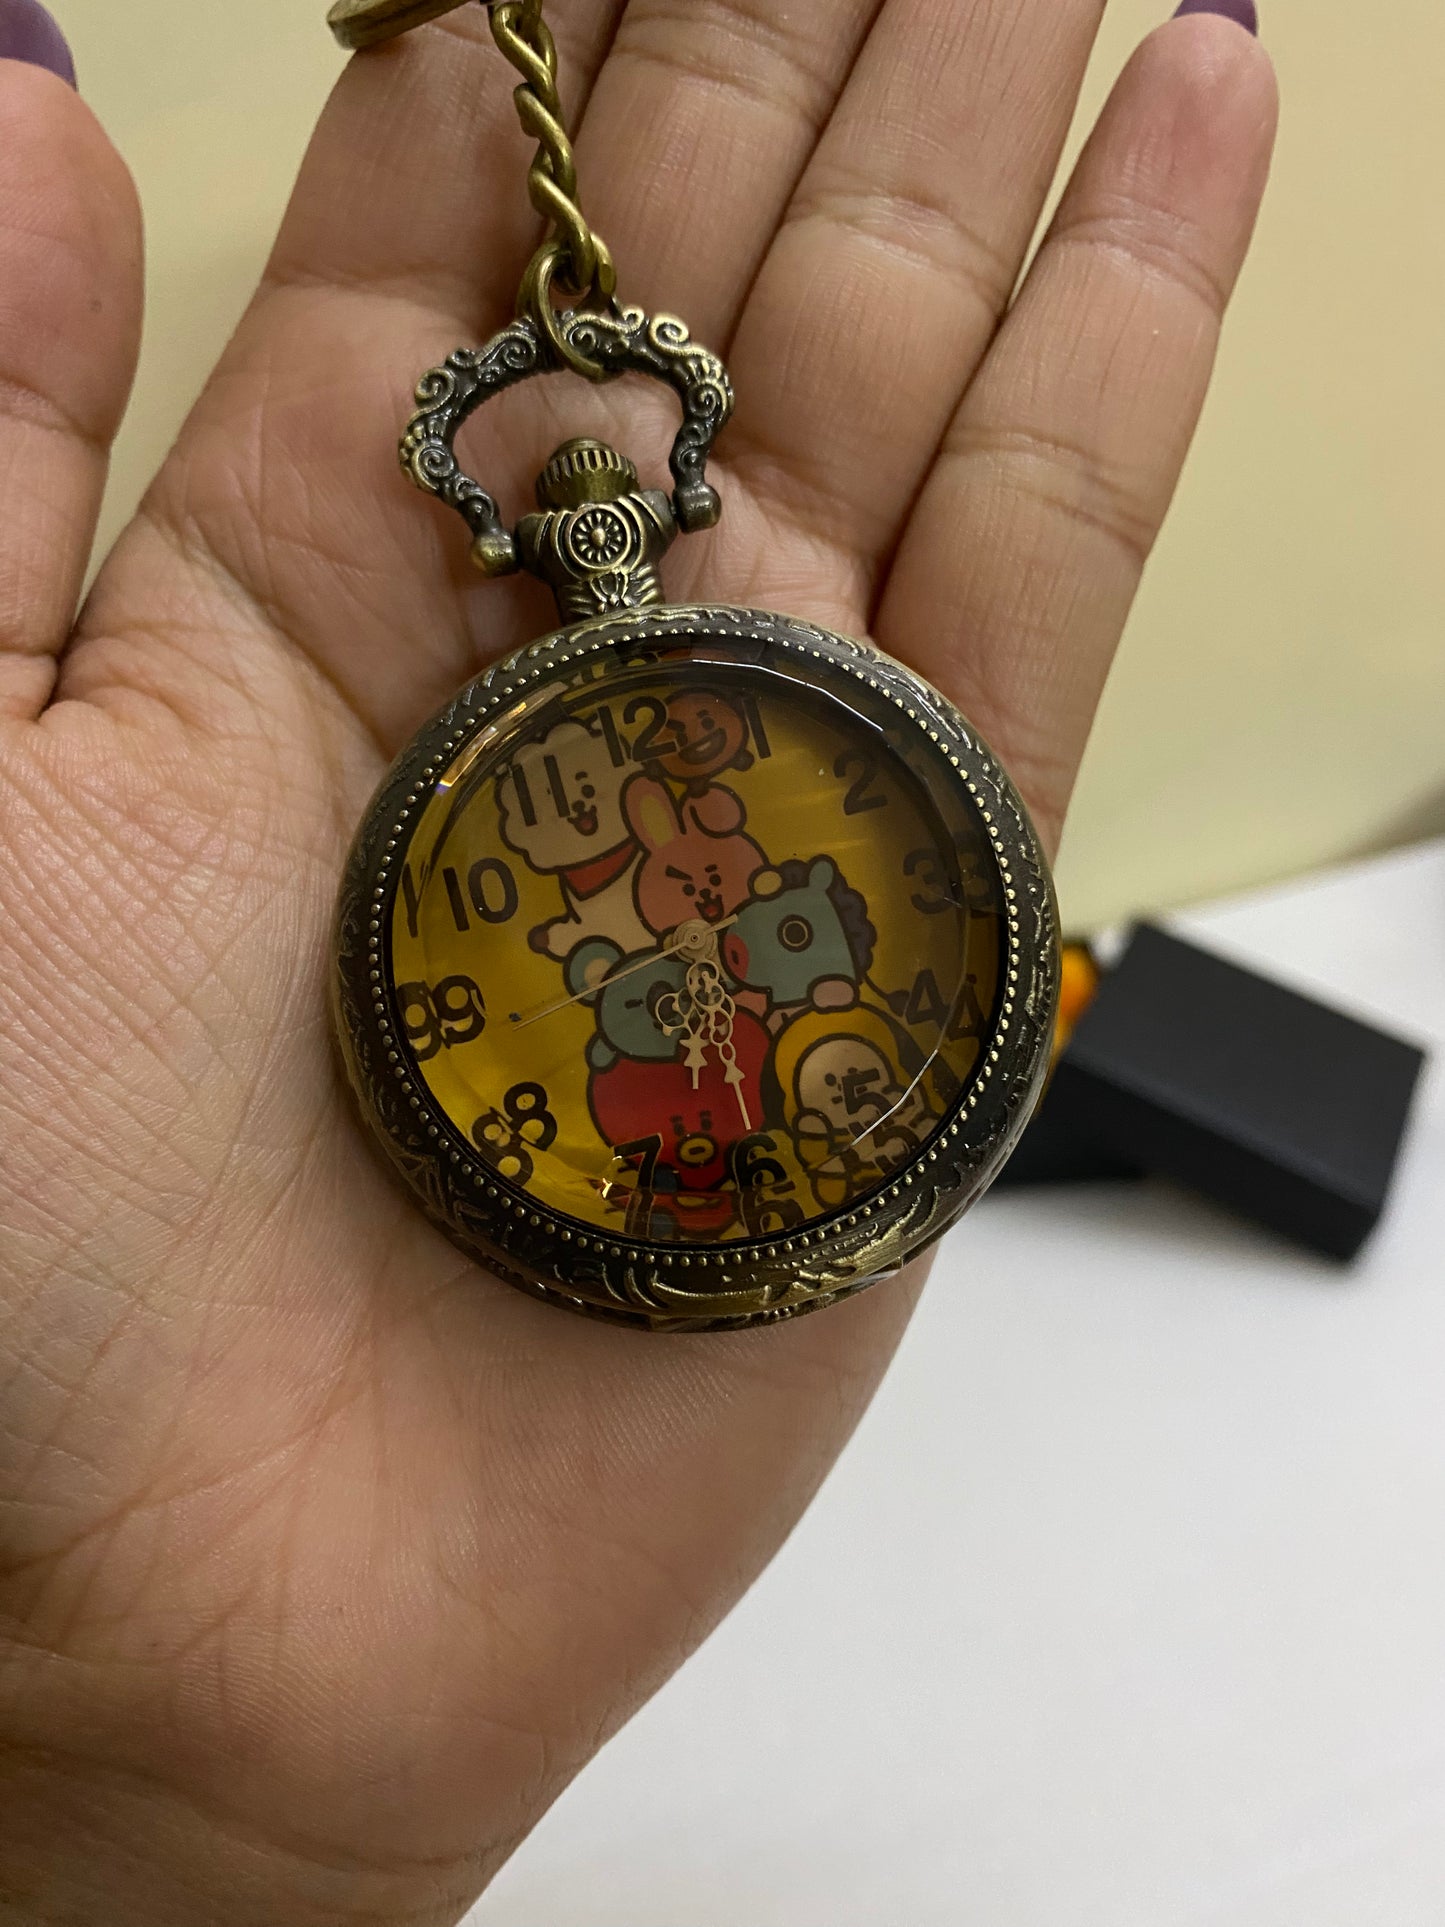 Bts minis  antique watch keychain